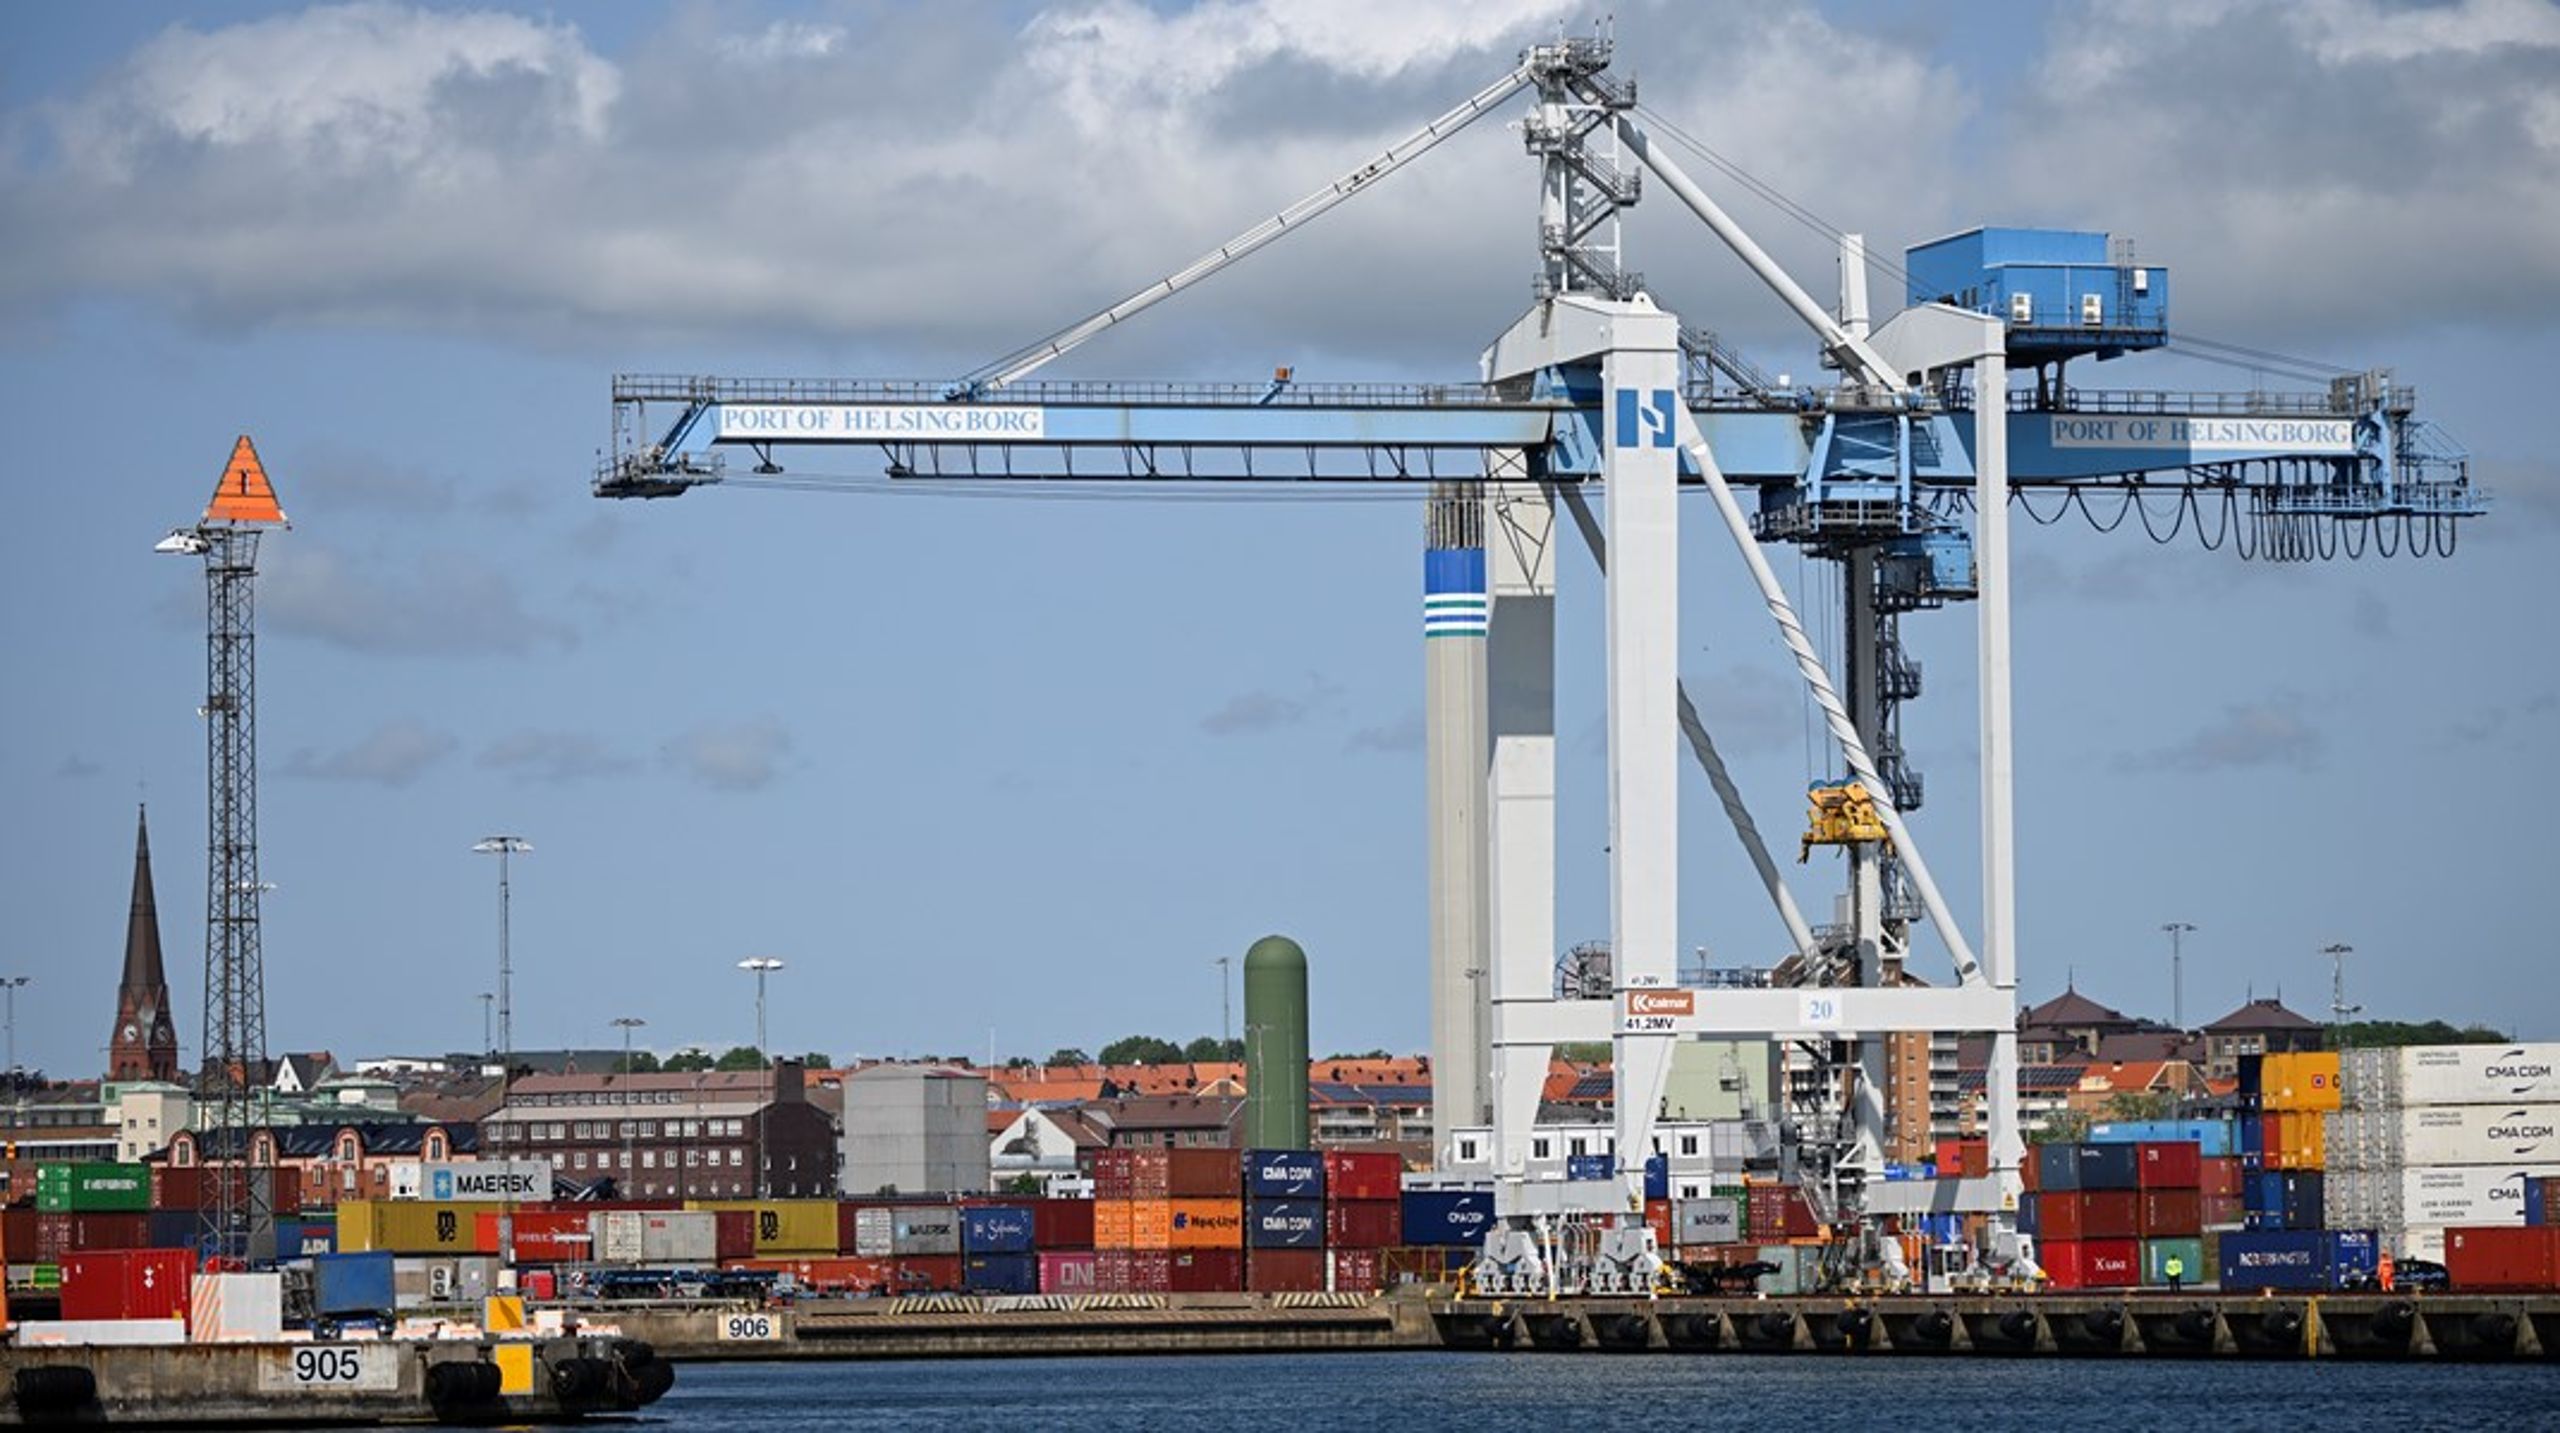 En väl fungerande sjöfart är avgörande för svensk utrikeshandel och varuförsörjning, skriver debattörerna.